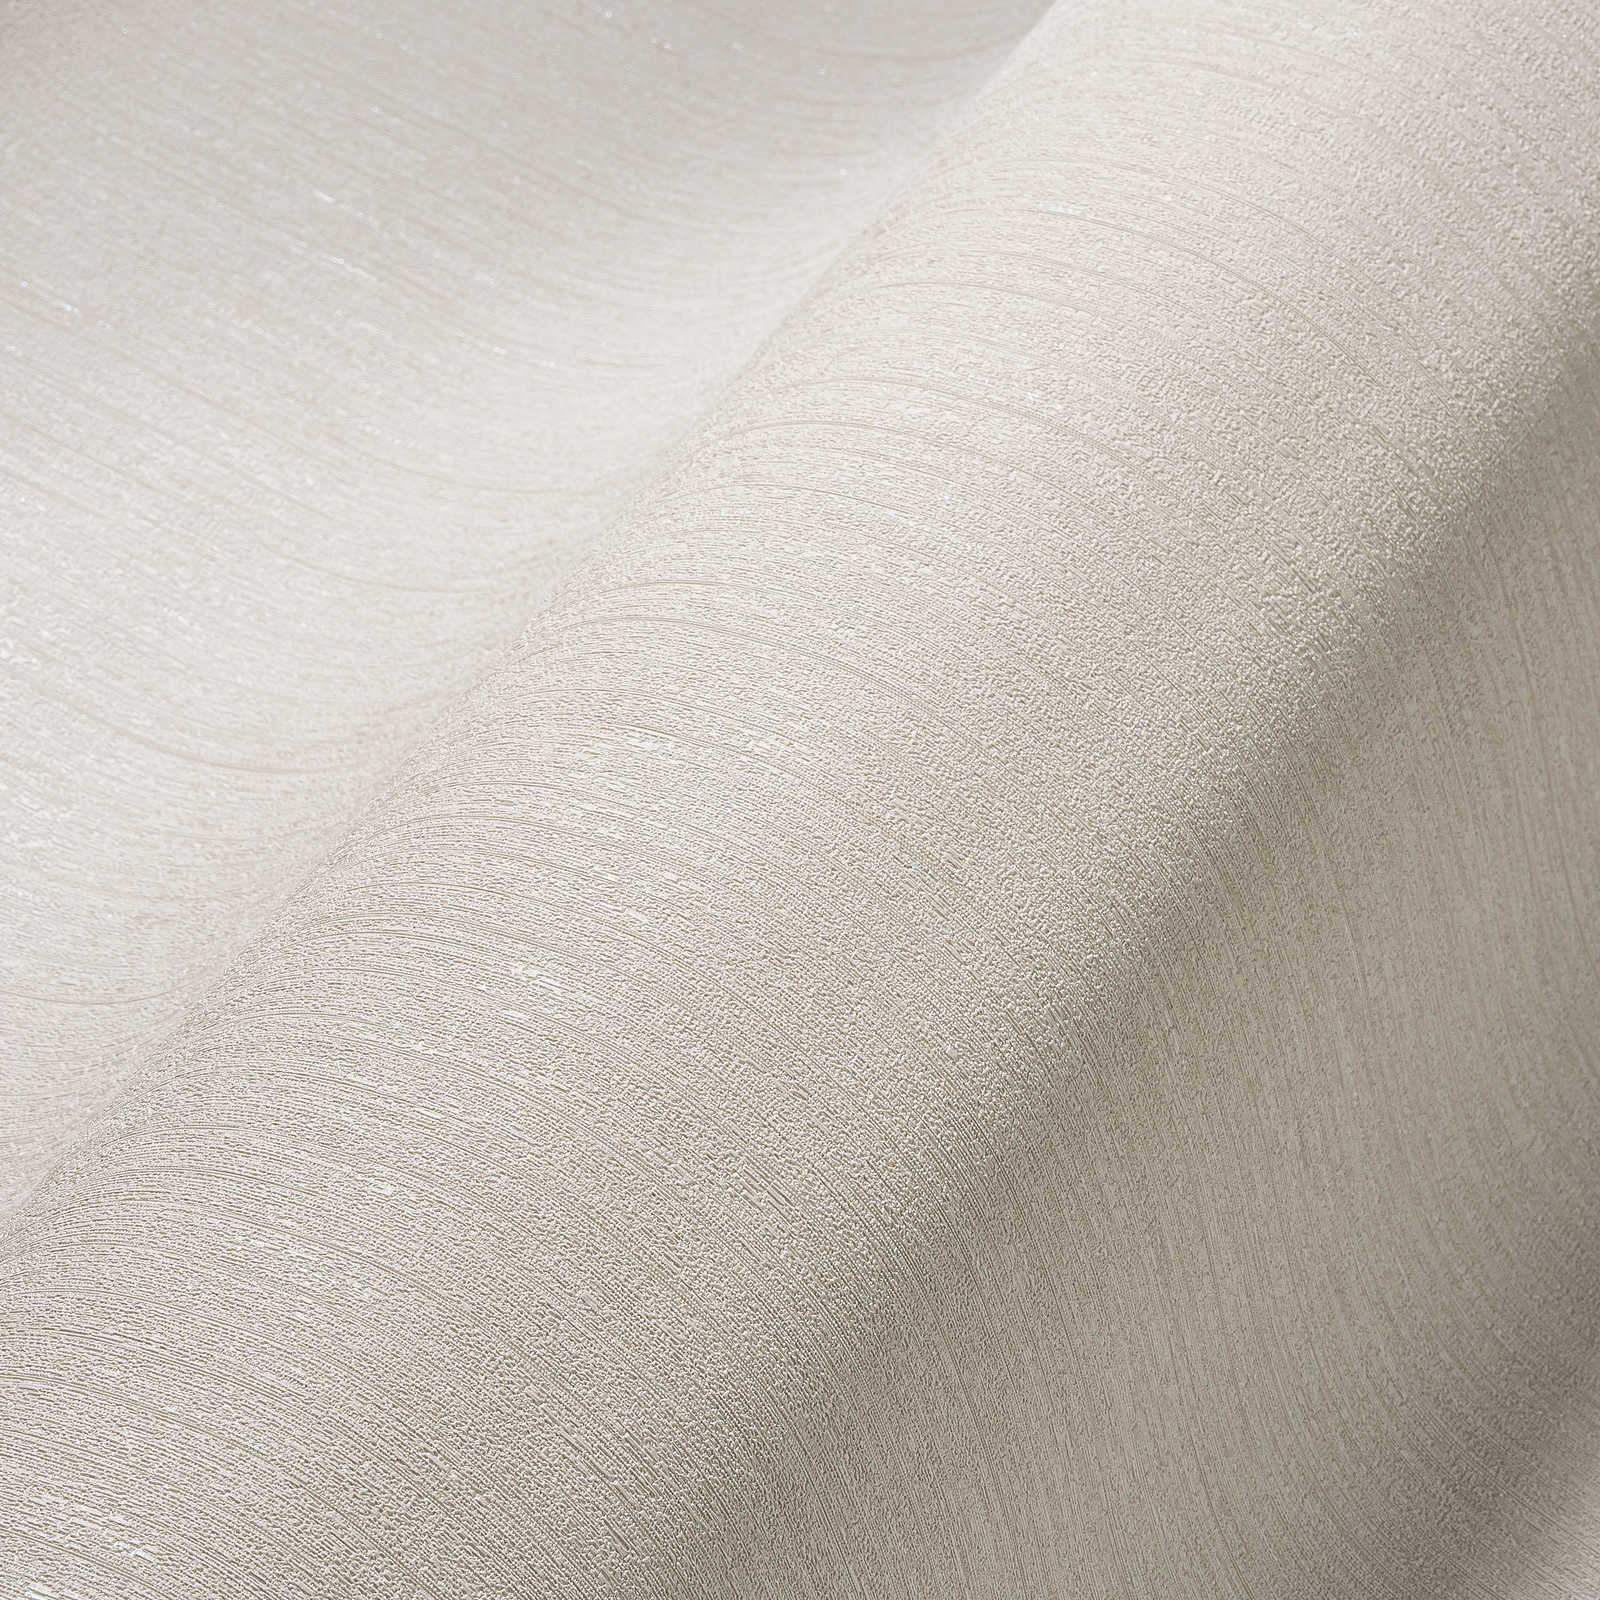             Vliesbehang taupe, effen & zijdemat met textuureffect
        